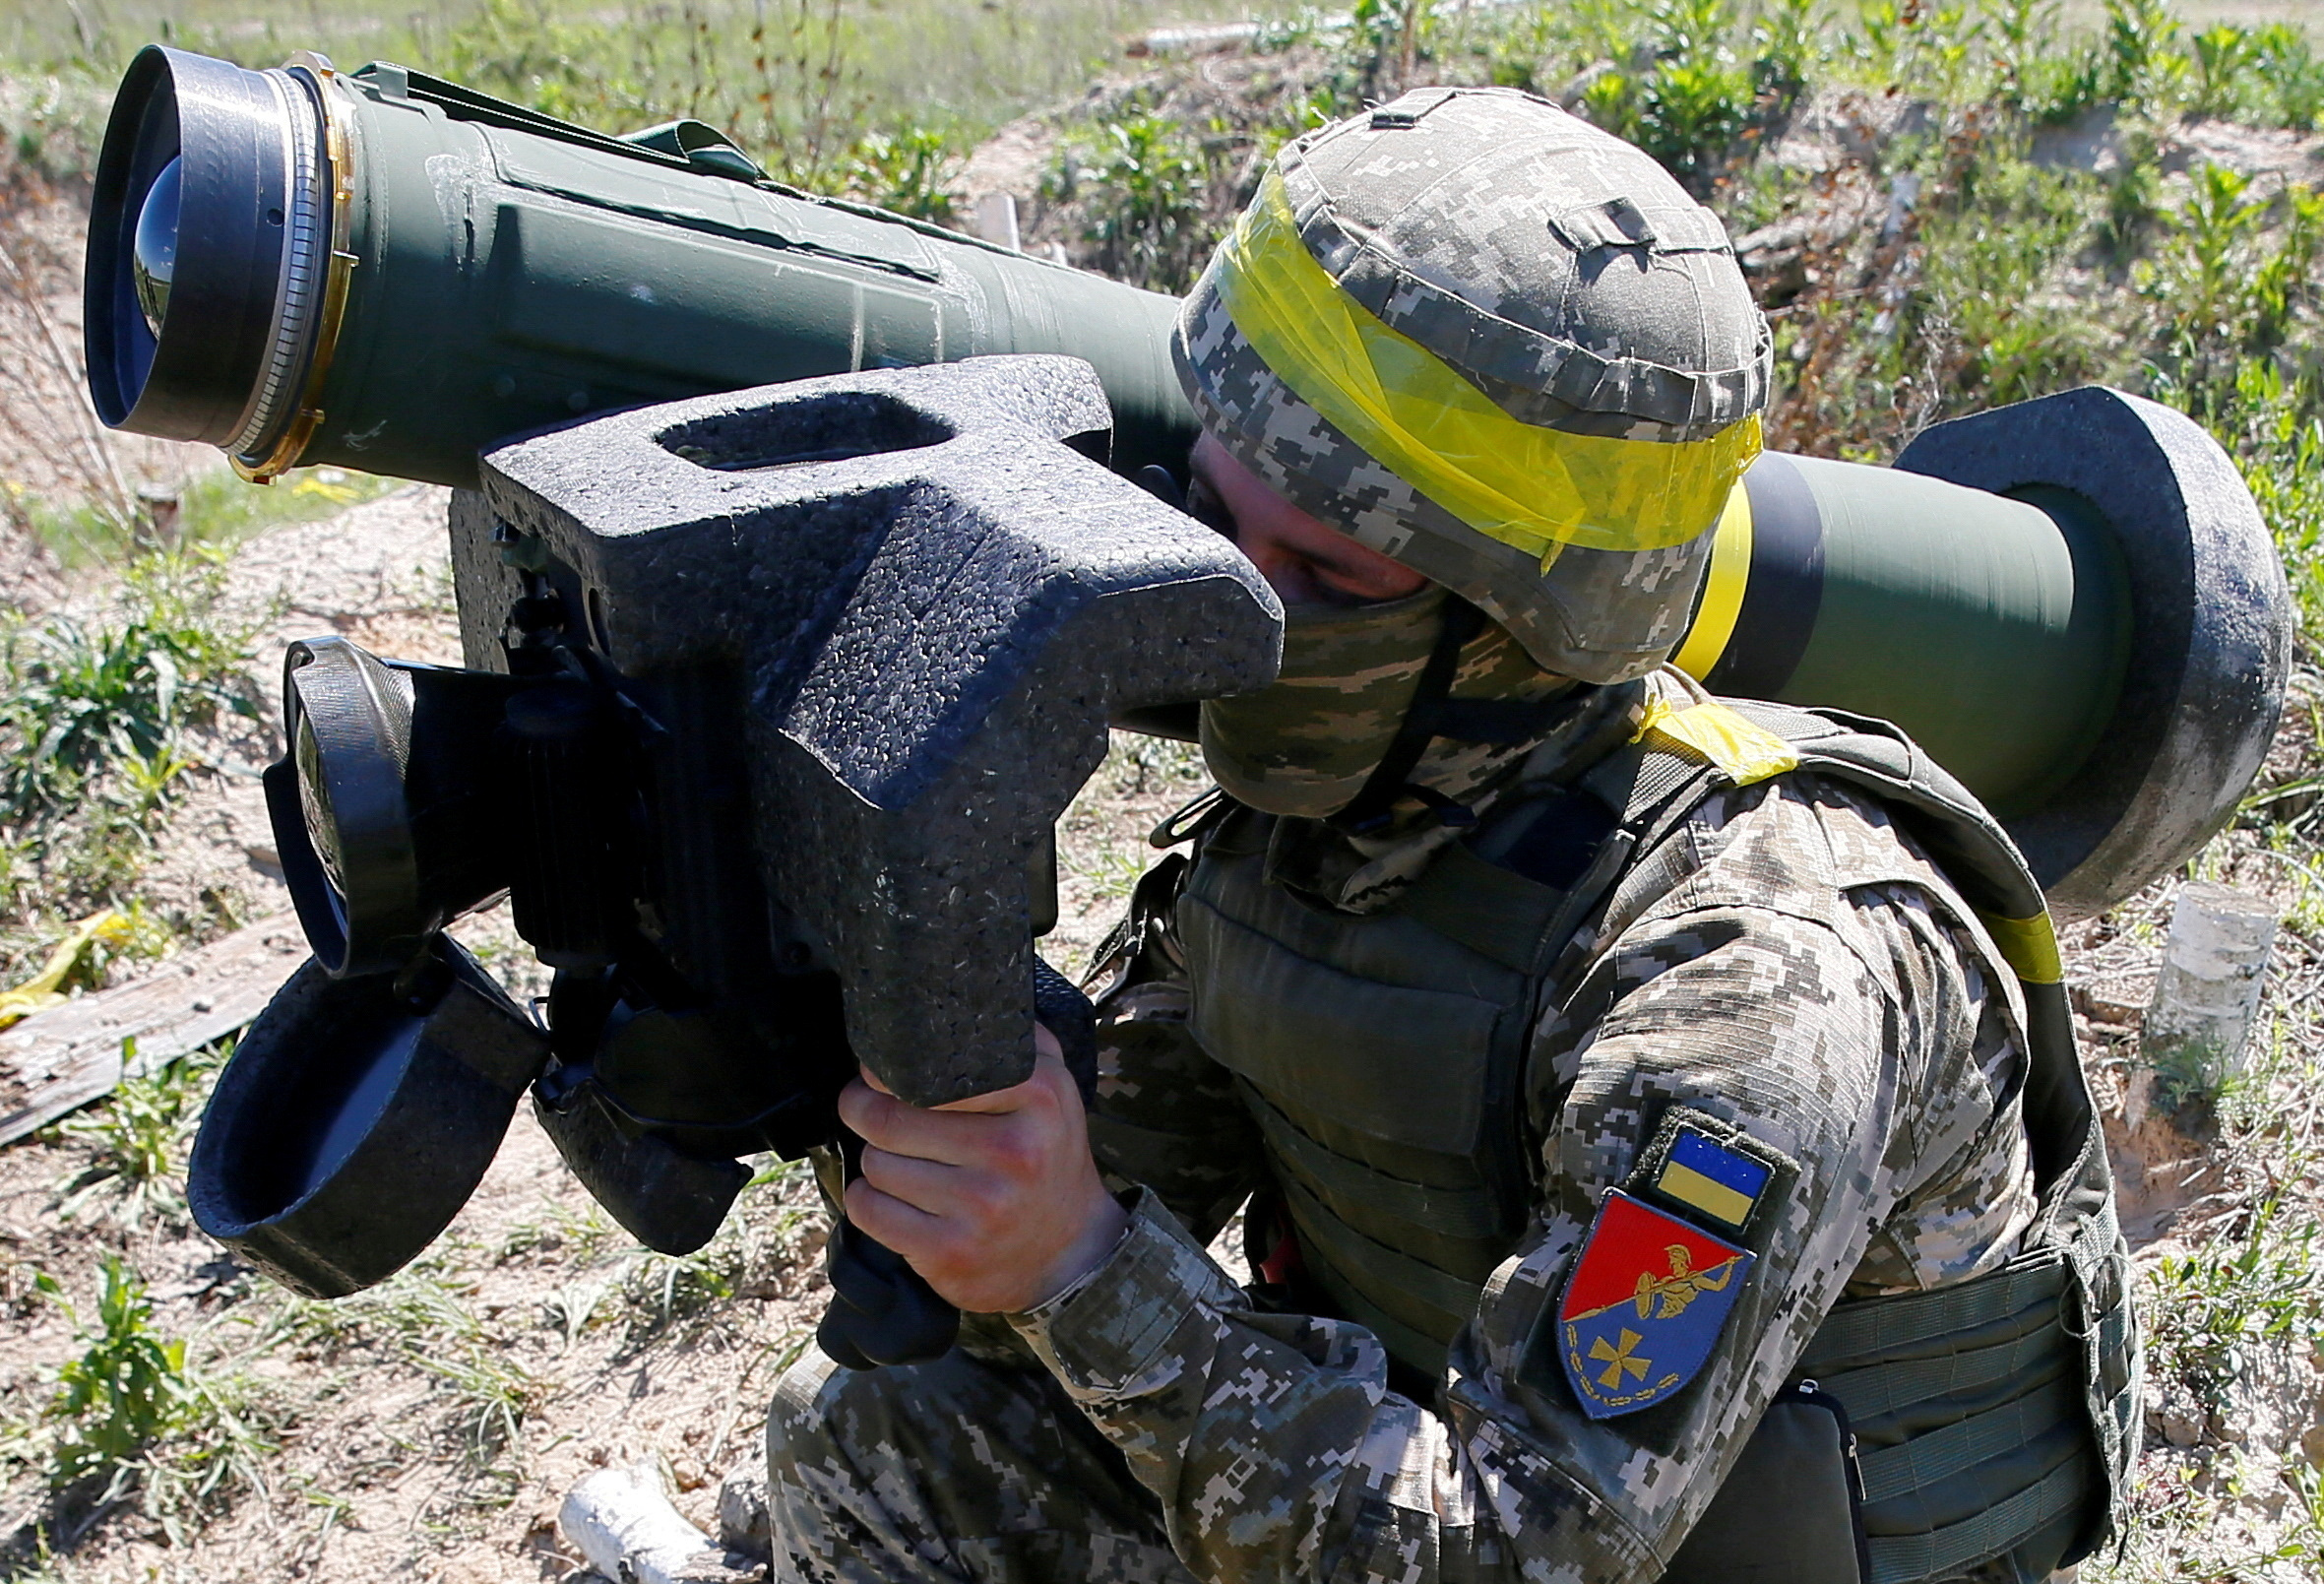 FOTO DE ARCHIVO: Un soldado sostiene un sistema de misiles Javelin durante un ejercicio militar en el centro de entrenamiento de las Fuerzas Terrestres de Ucrania cerca de Rivne, Ucrania 26 de mayo de 2021. Foto tomada el 26 de mayo de 2021. REUTERS/Gleb Garanich/F/File Photo